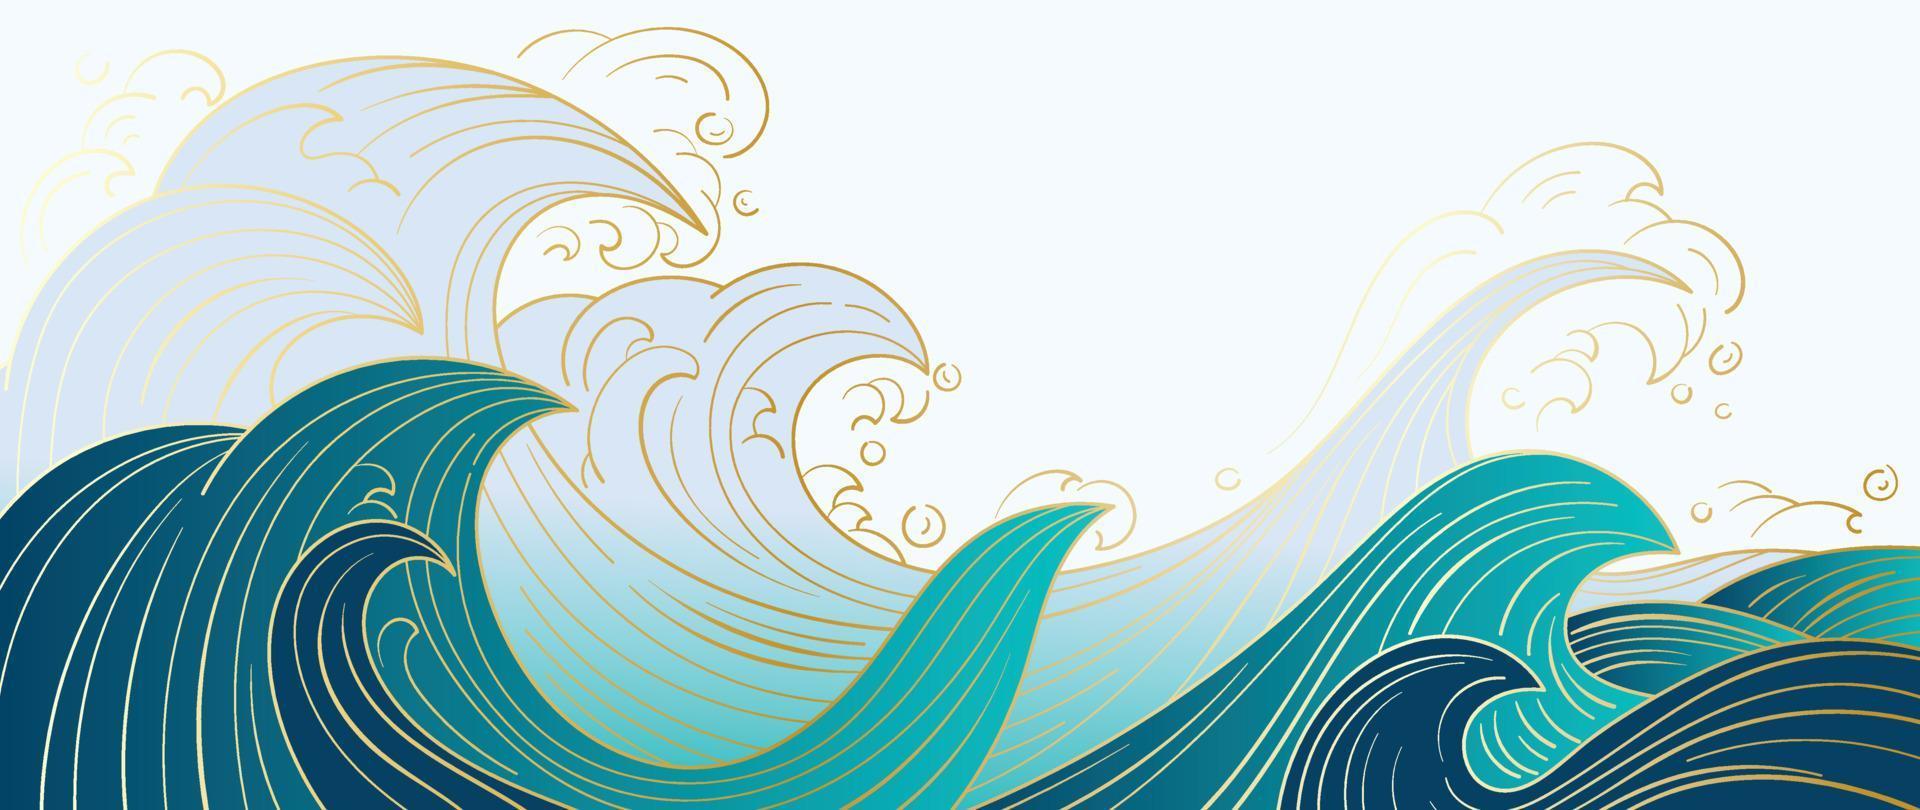 vector de patrón de onda japonés tradicional. fondo de patrón de arte de línea dorada de onda oceánica oriental dibujada a mano de lujo. ilustración de diseño de arte para impresión, tela, afiche, decoración del hogar y papel tapiz.